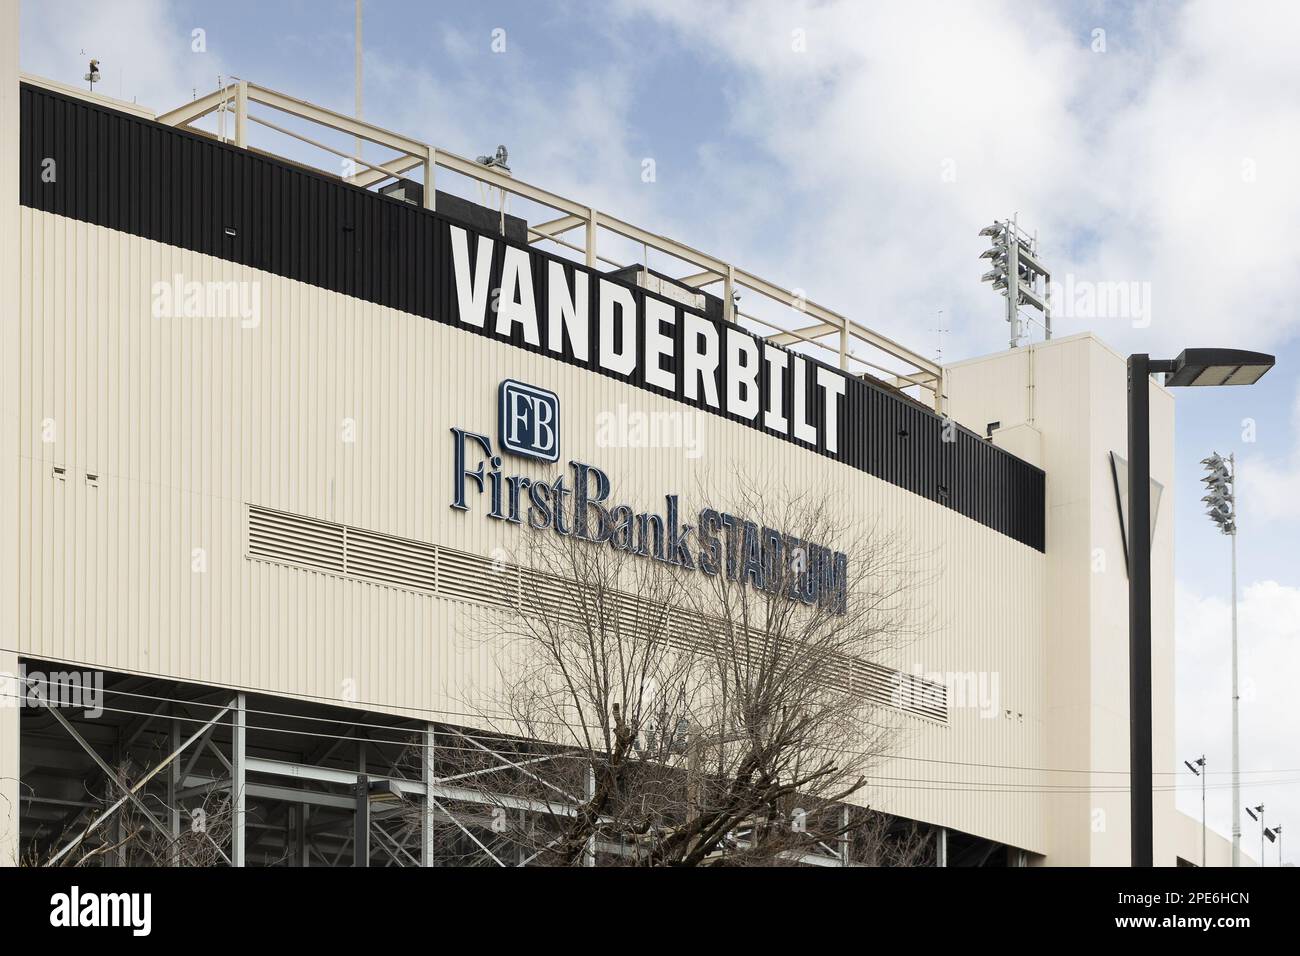 Le stade FirstBank, construit en 1922, abrite l'équipe de football de l'Université Vanderbilt Commodores. Banque D'Images